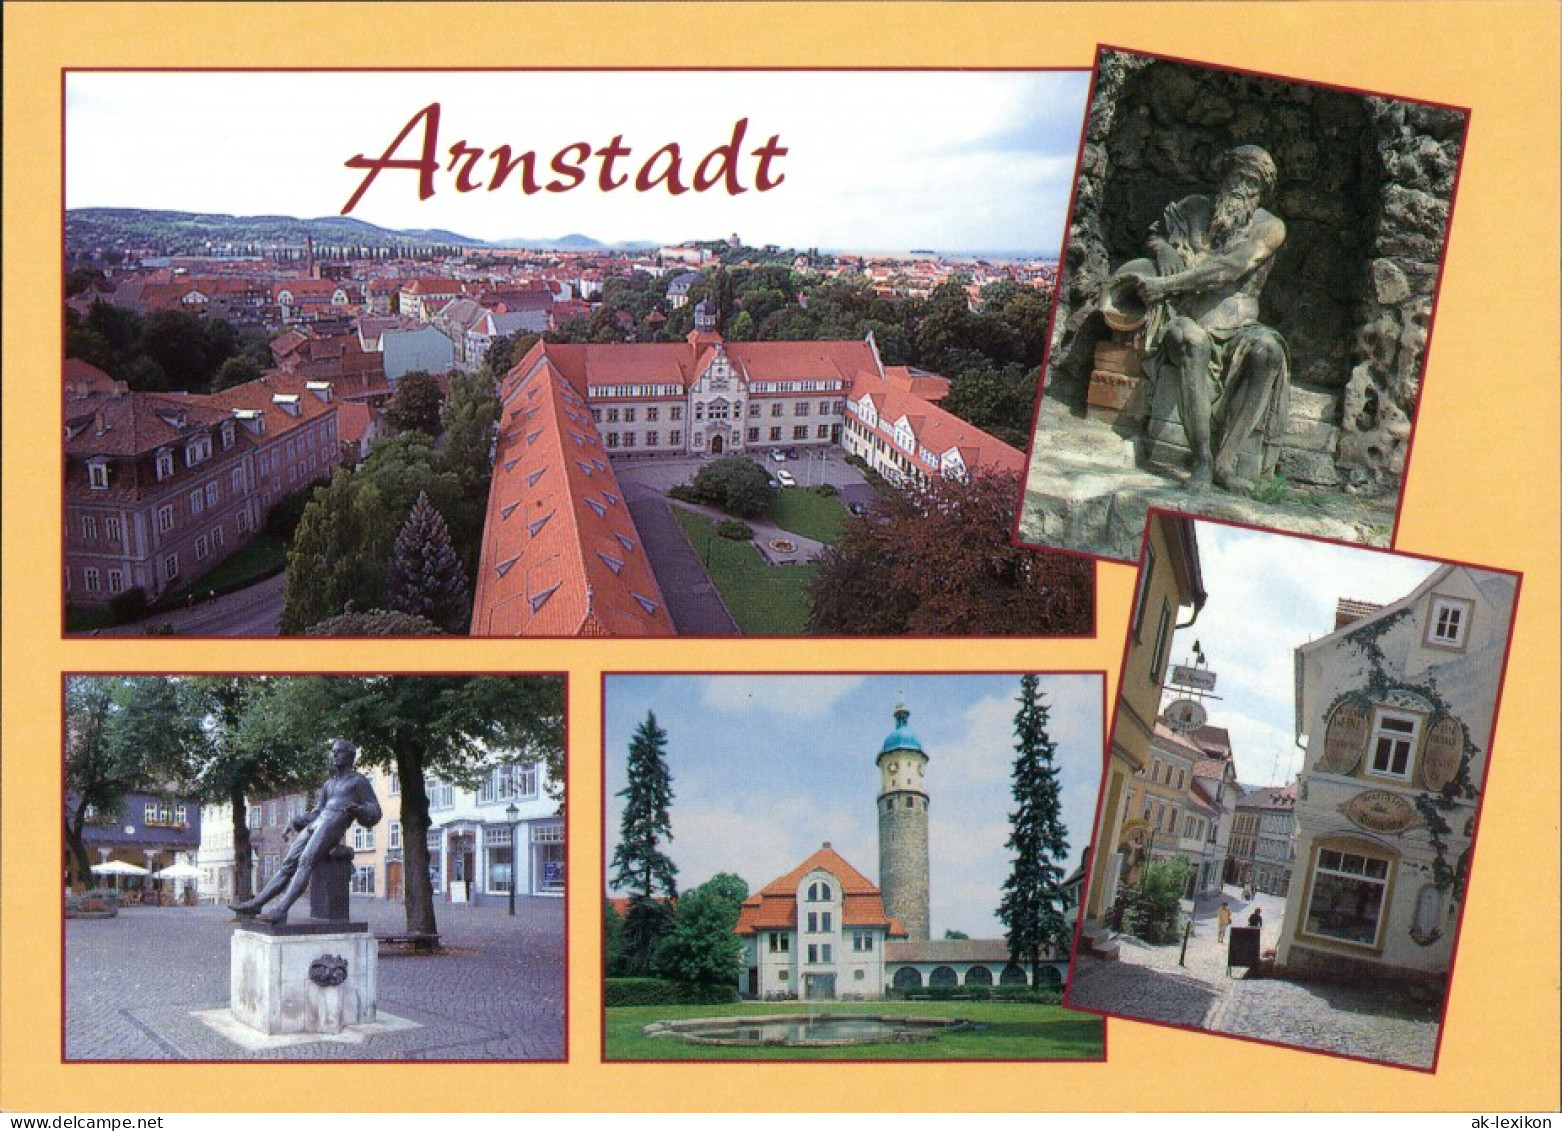 Ansichtskarte Arnstadt Luftbild, Denkmal, Gasse 1995 - Arnstadt